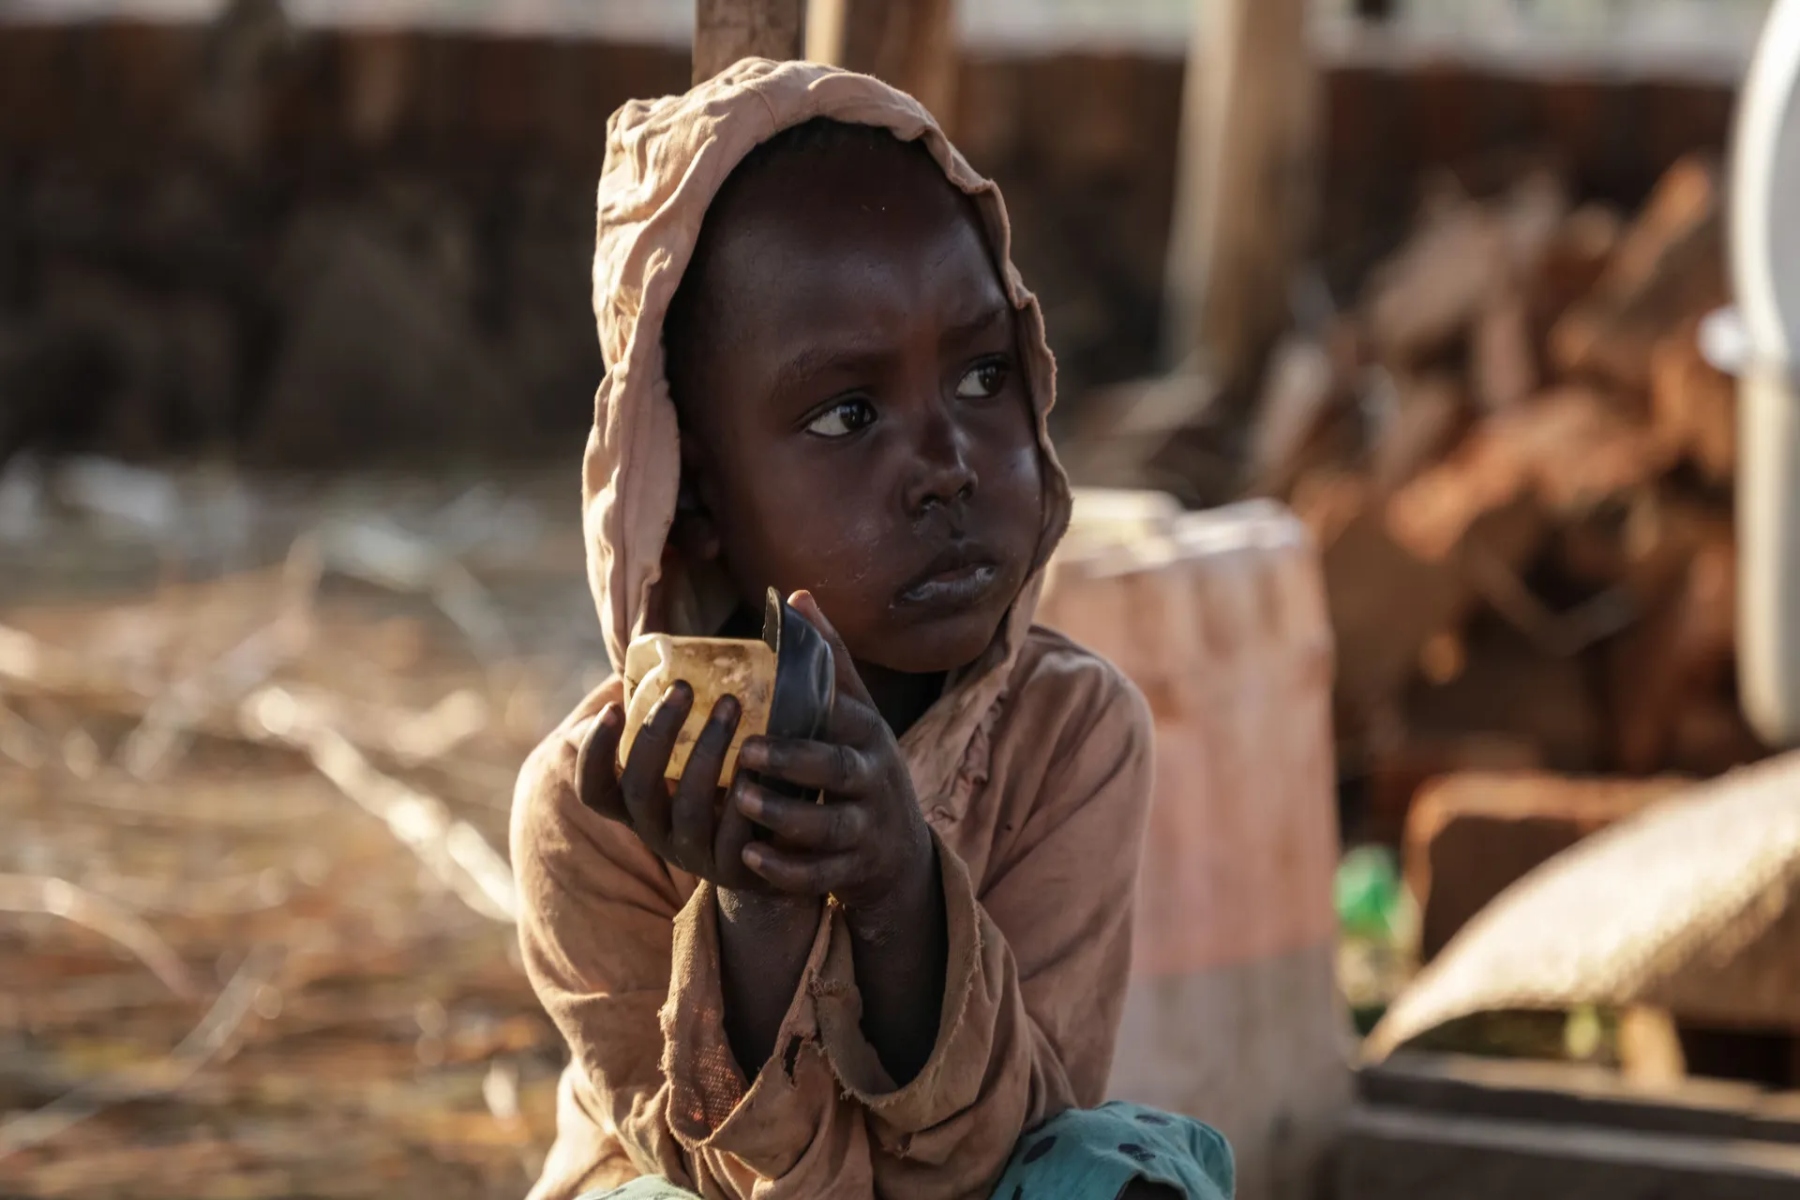 Περίπου 15 εκατομμύρια Σουδανοί χρειάζονται επείγουσα υγειονομική βοήθεια